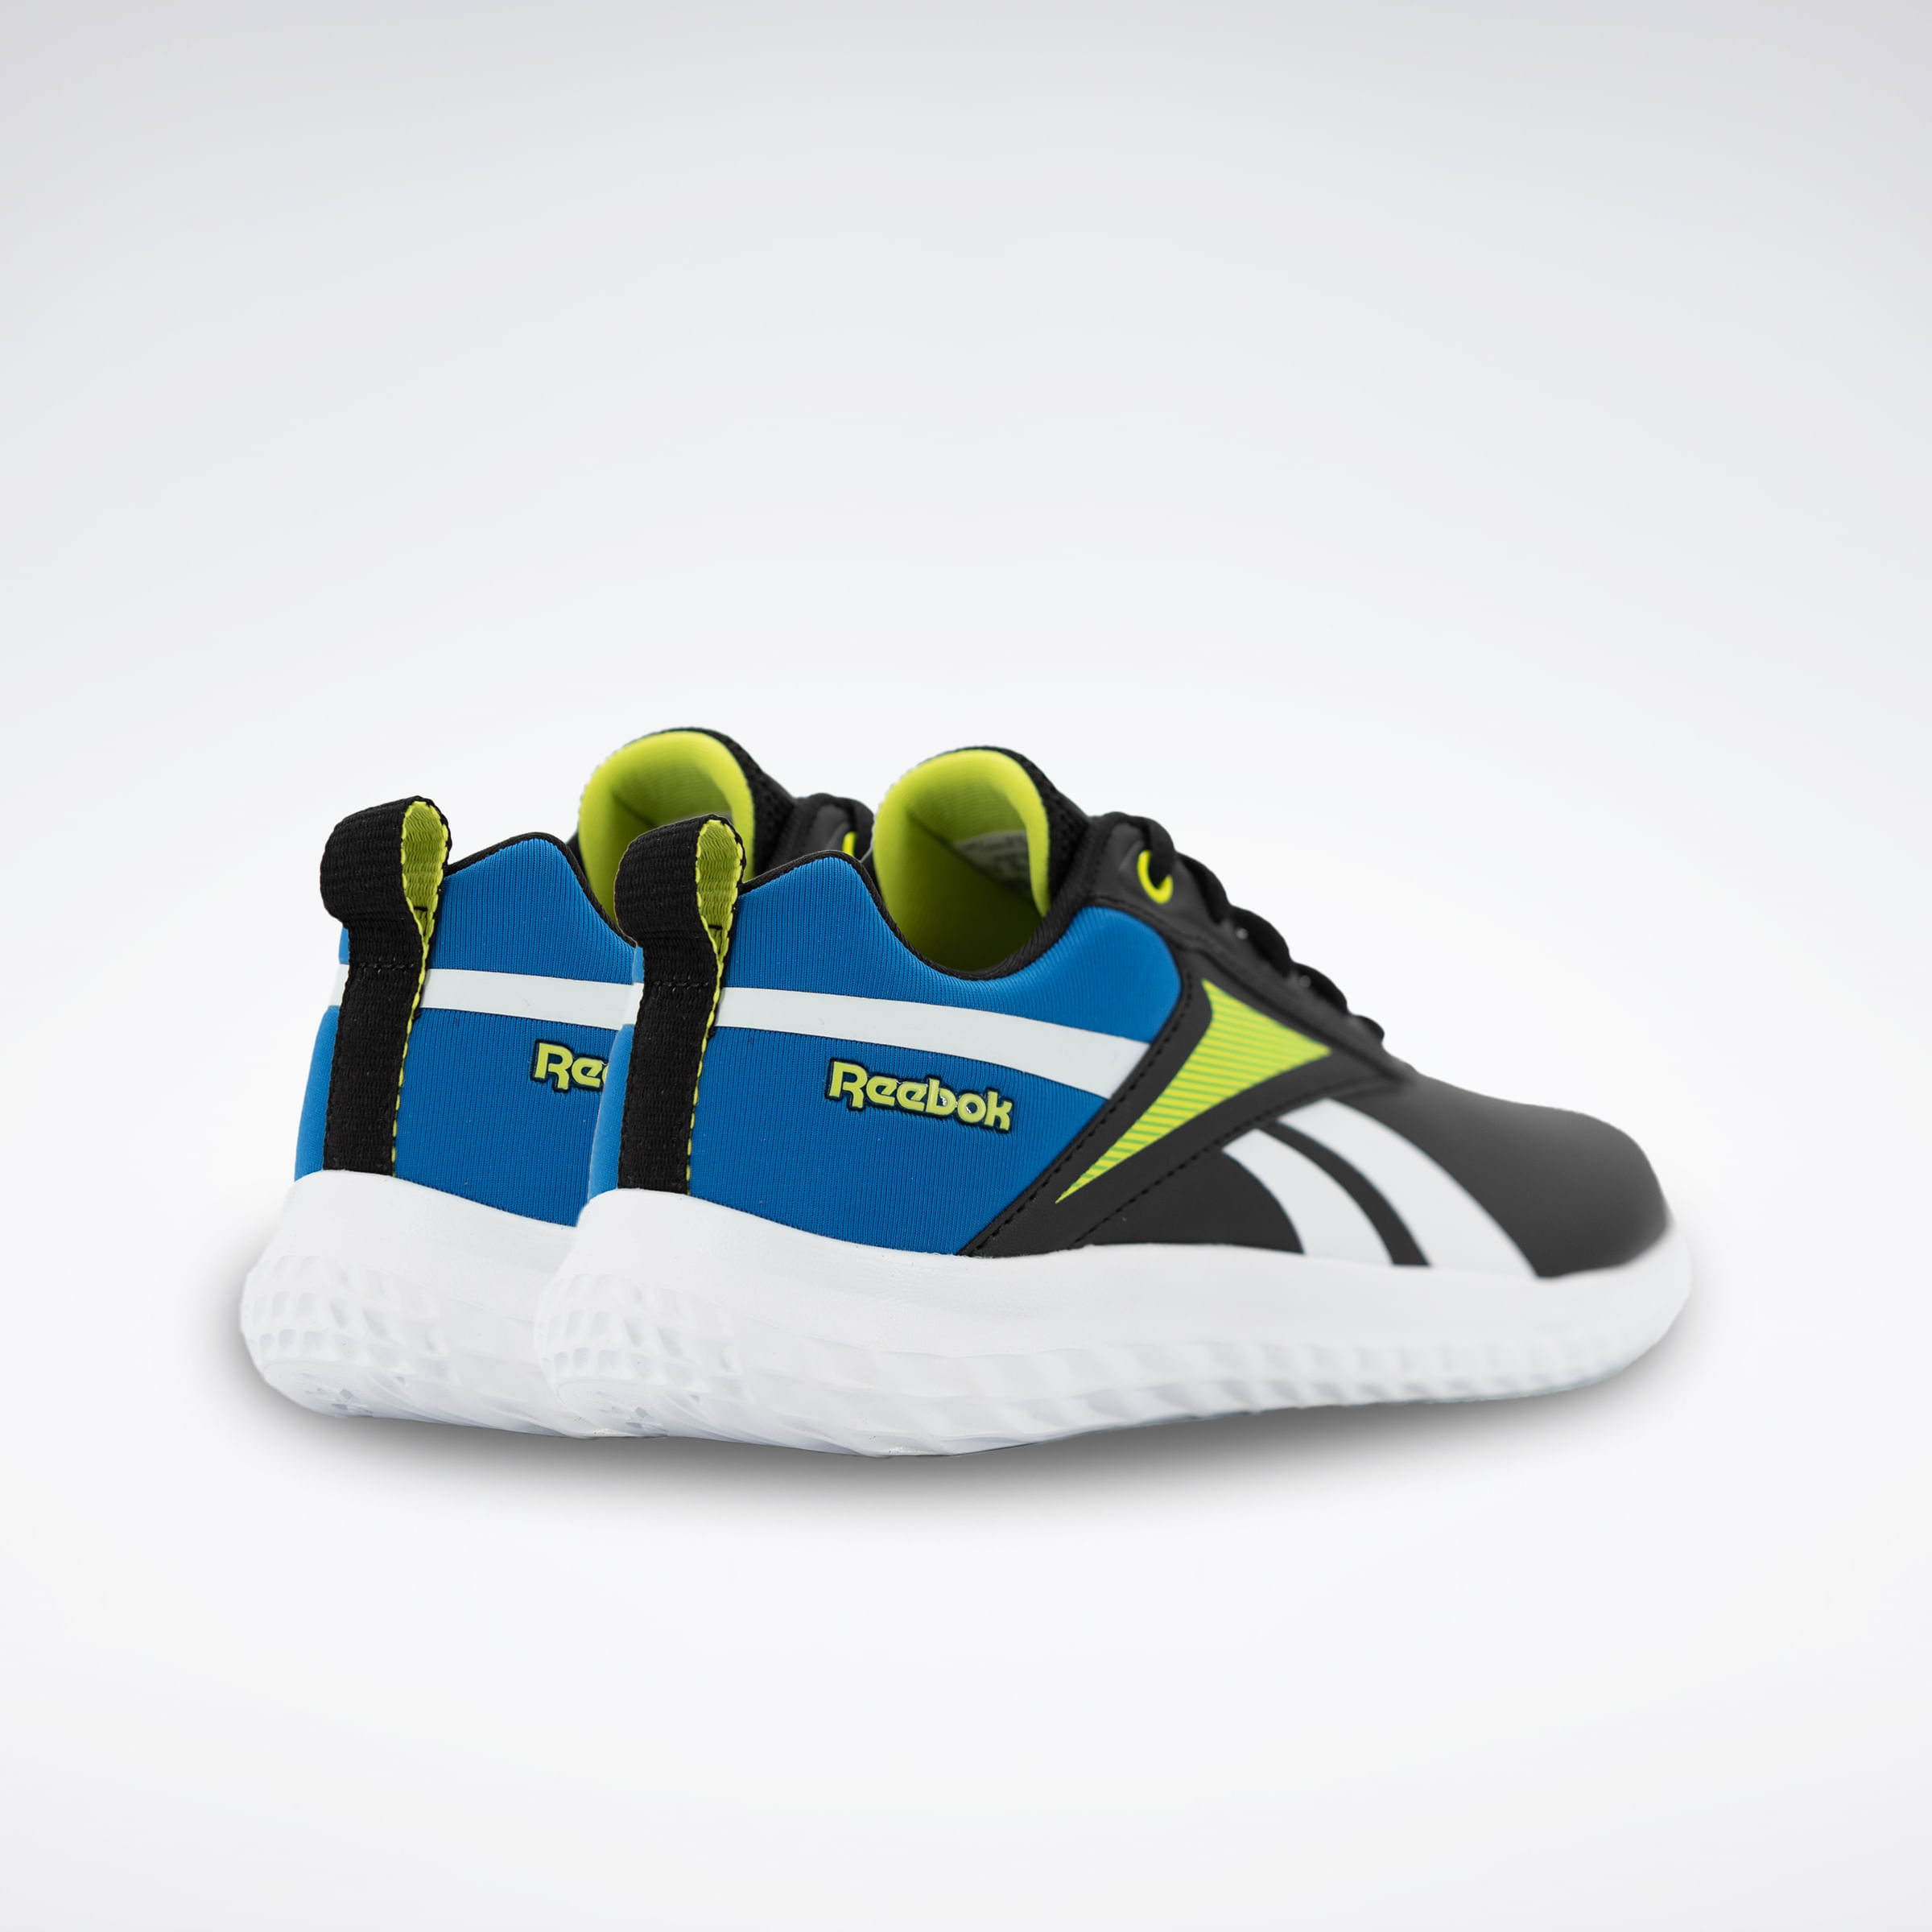 Falabella Perú - ¡Elige tus zapatillas favoritas para este verano!  Visítanos y elige tus pares favoritos de Nike Running Peru, Adidas  Originals Peru, Reebok y Umbro Perú. Además, 30% de descuento en